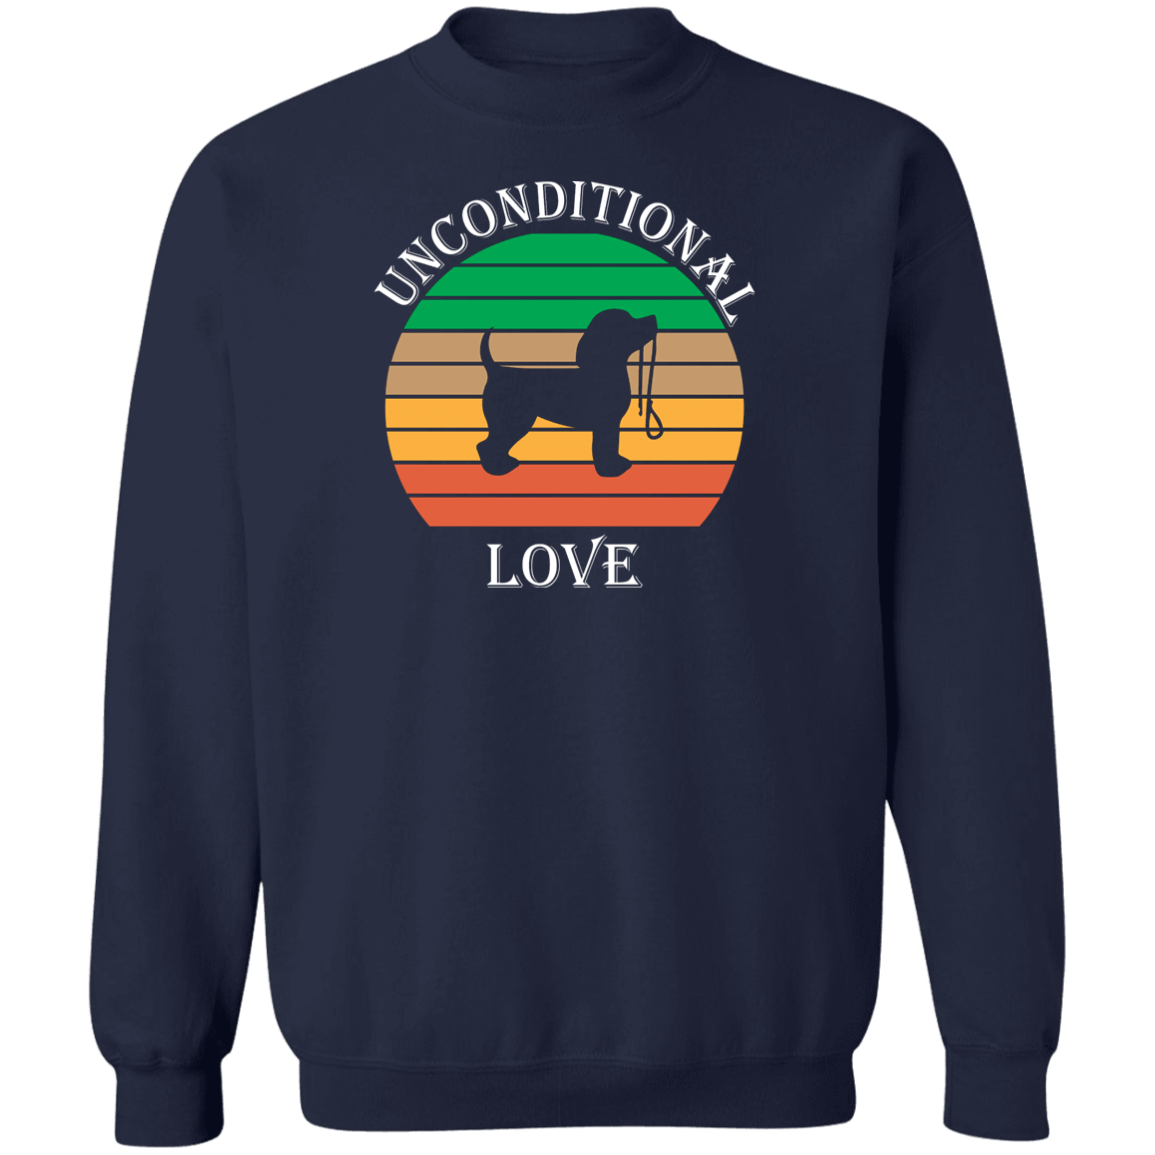 Unconditional Love - Sweatshirt.